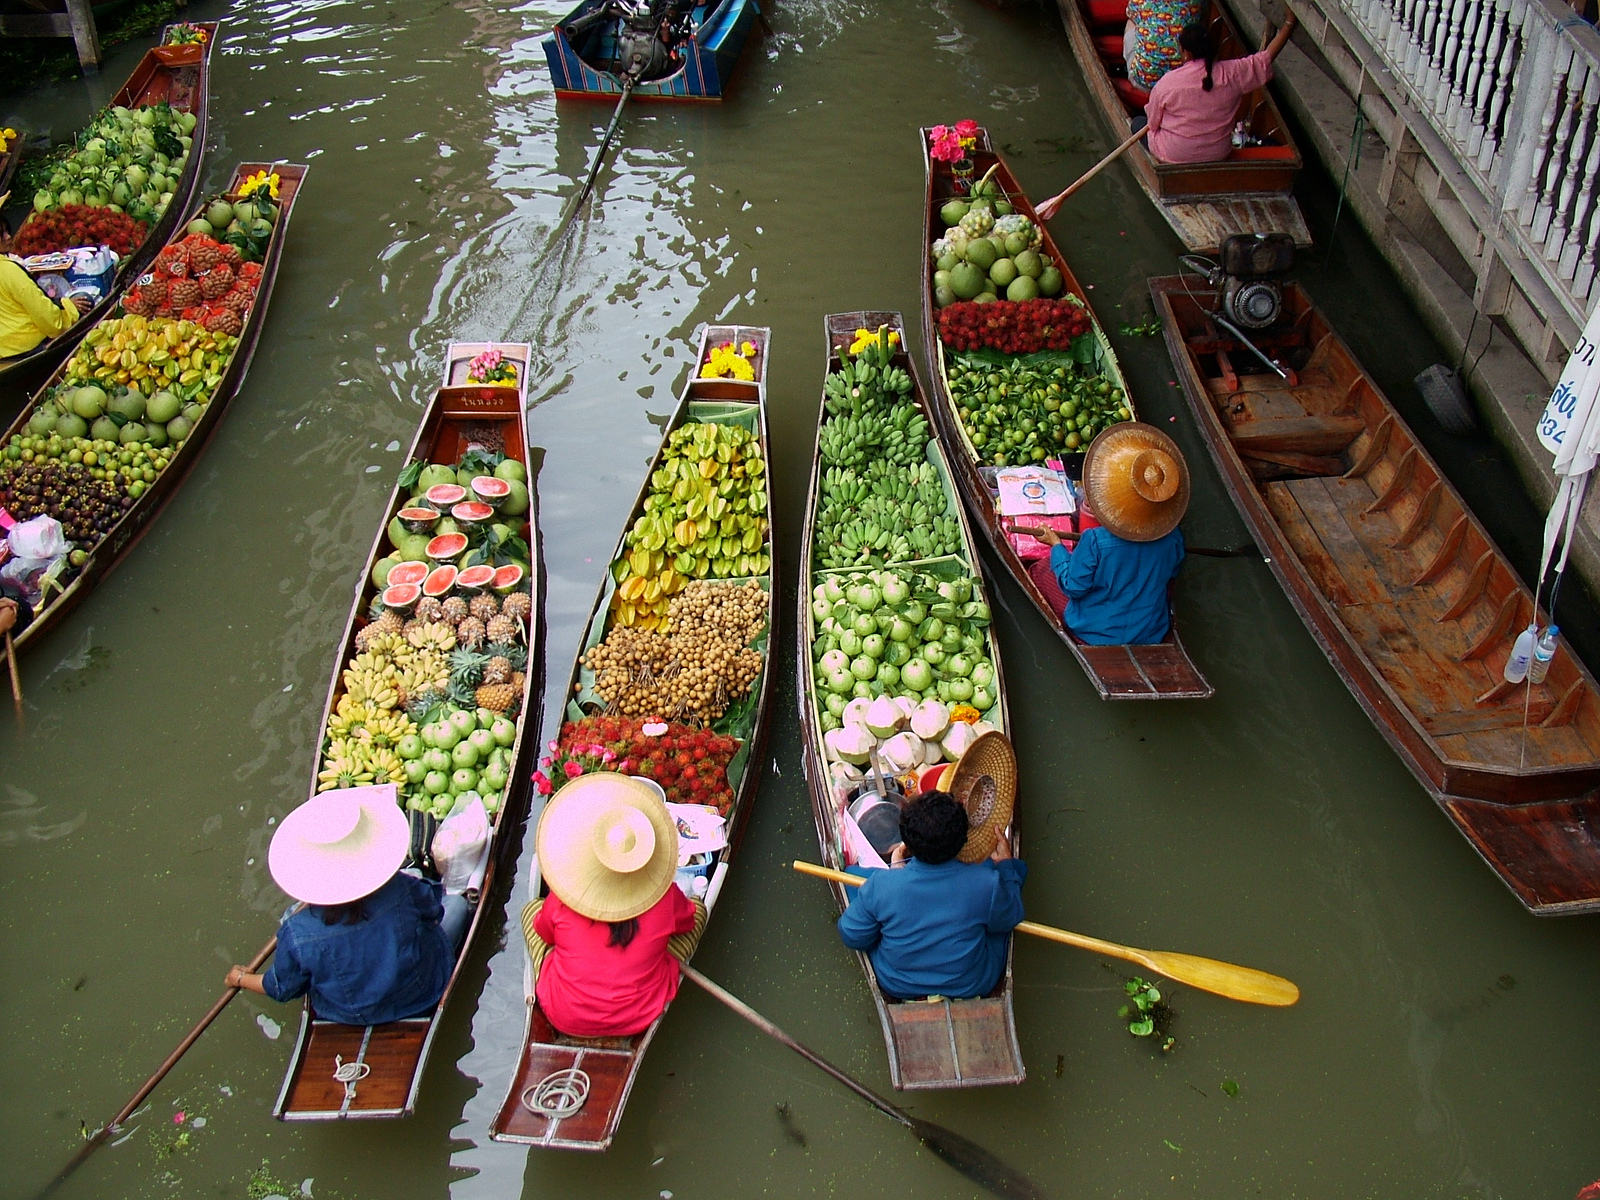 Quels sont les meilleurs marchés flottants à visiter en Thaïlande?